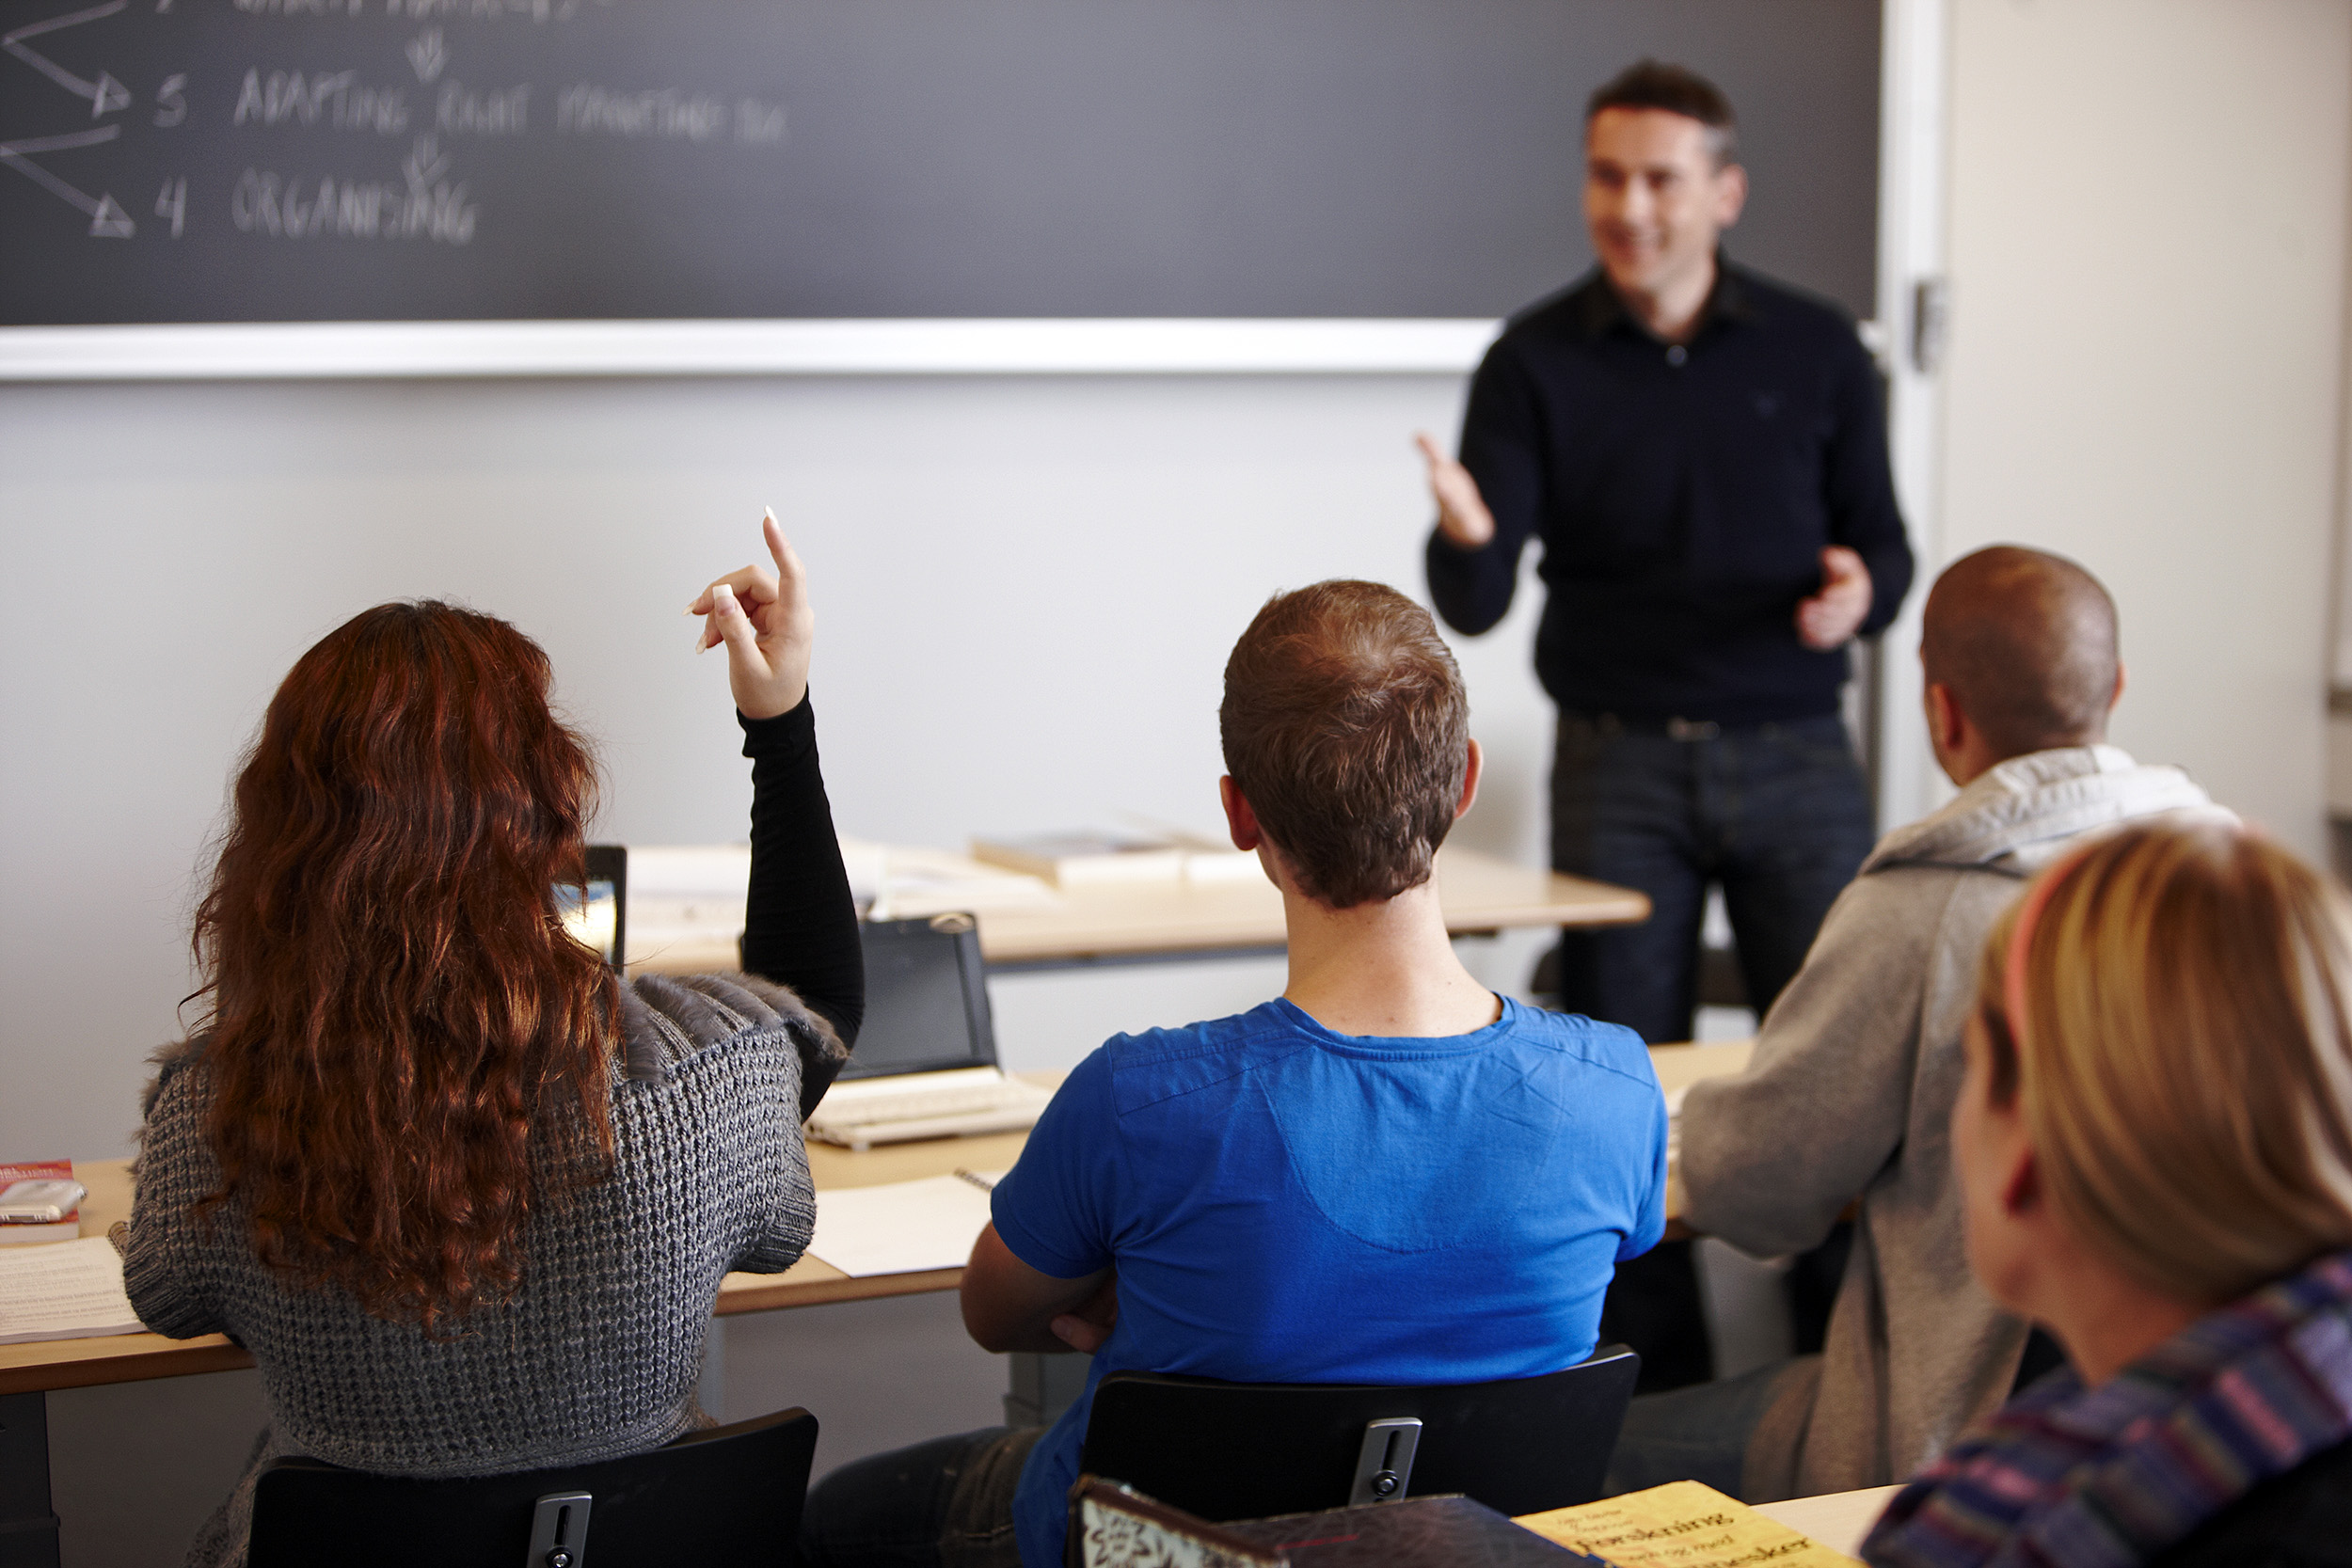 Ein Lehrer steht vor einer Tafel und nimmt eine Schülerin dran, die ihren Finger hebt. Drei weitere Schüler sitzen neben ihr.